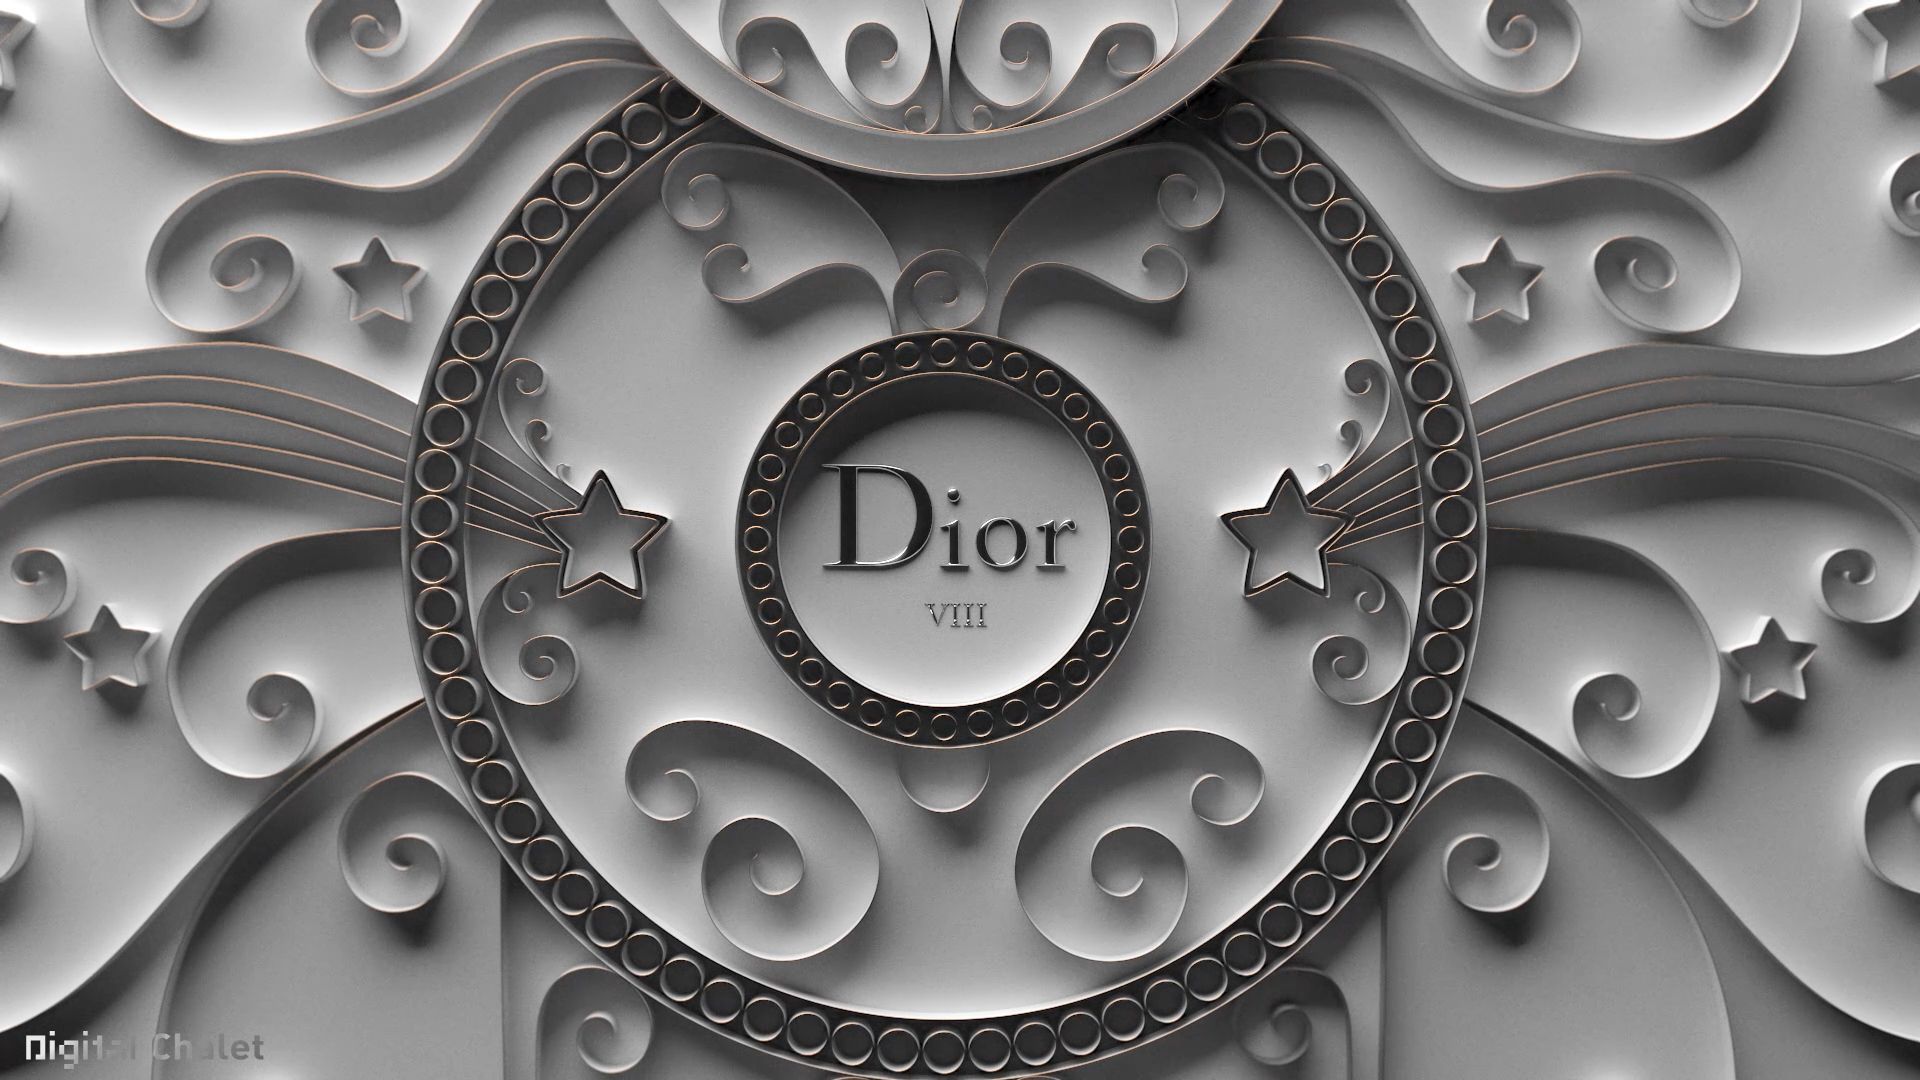 A close up of the dior logo - Dior